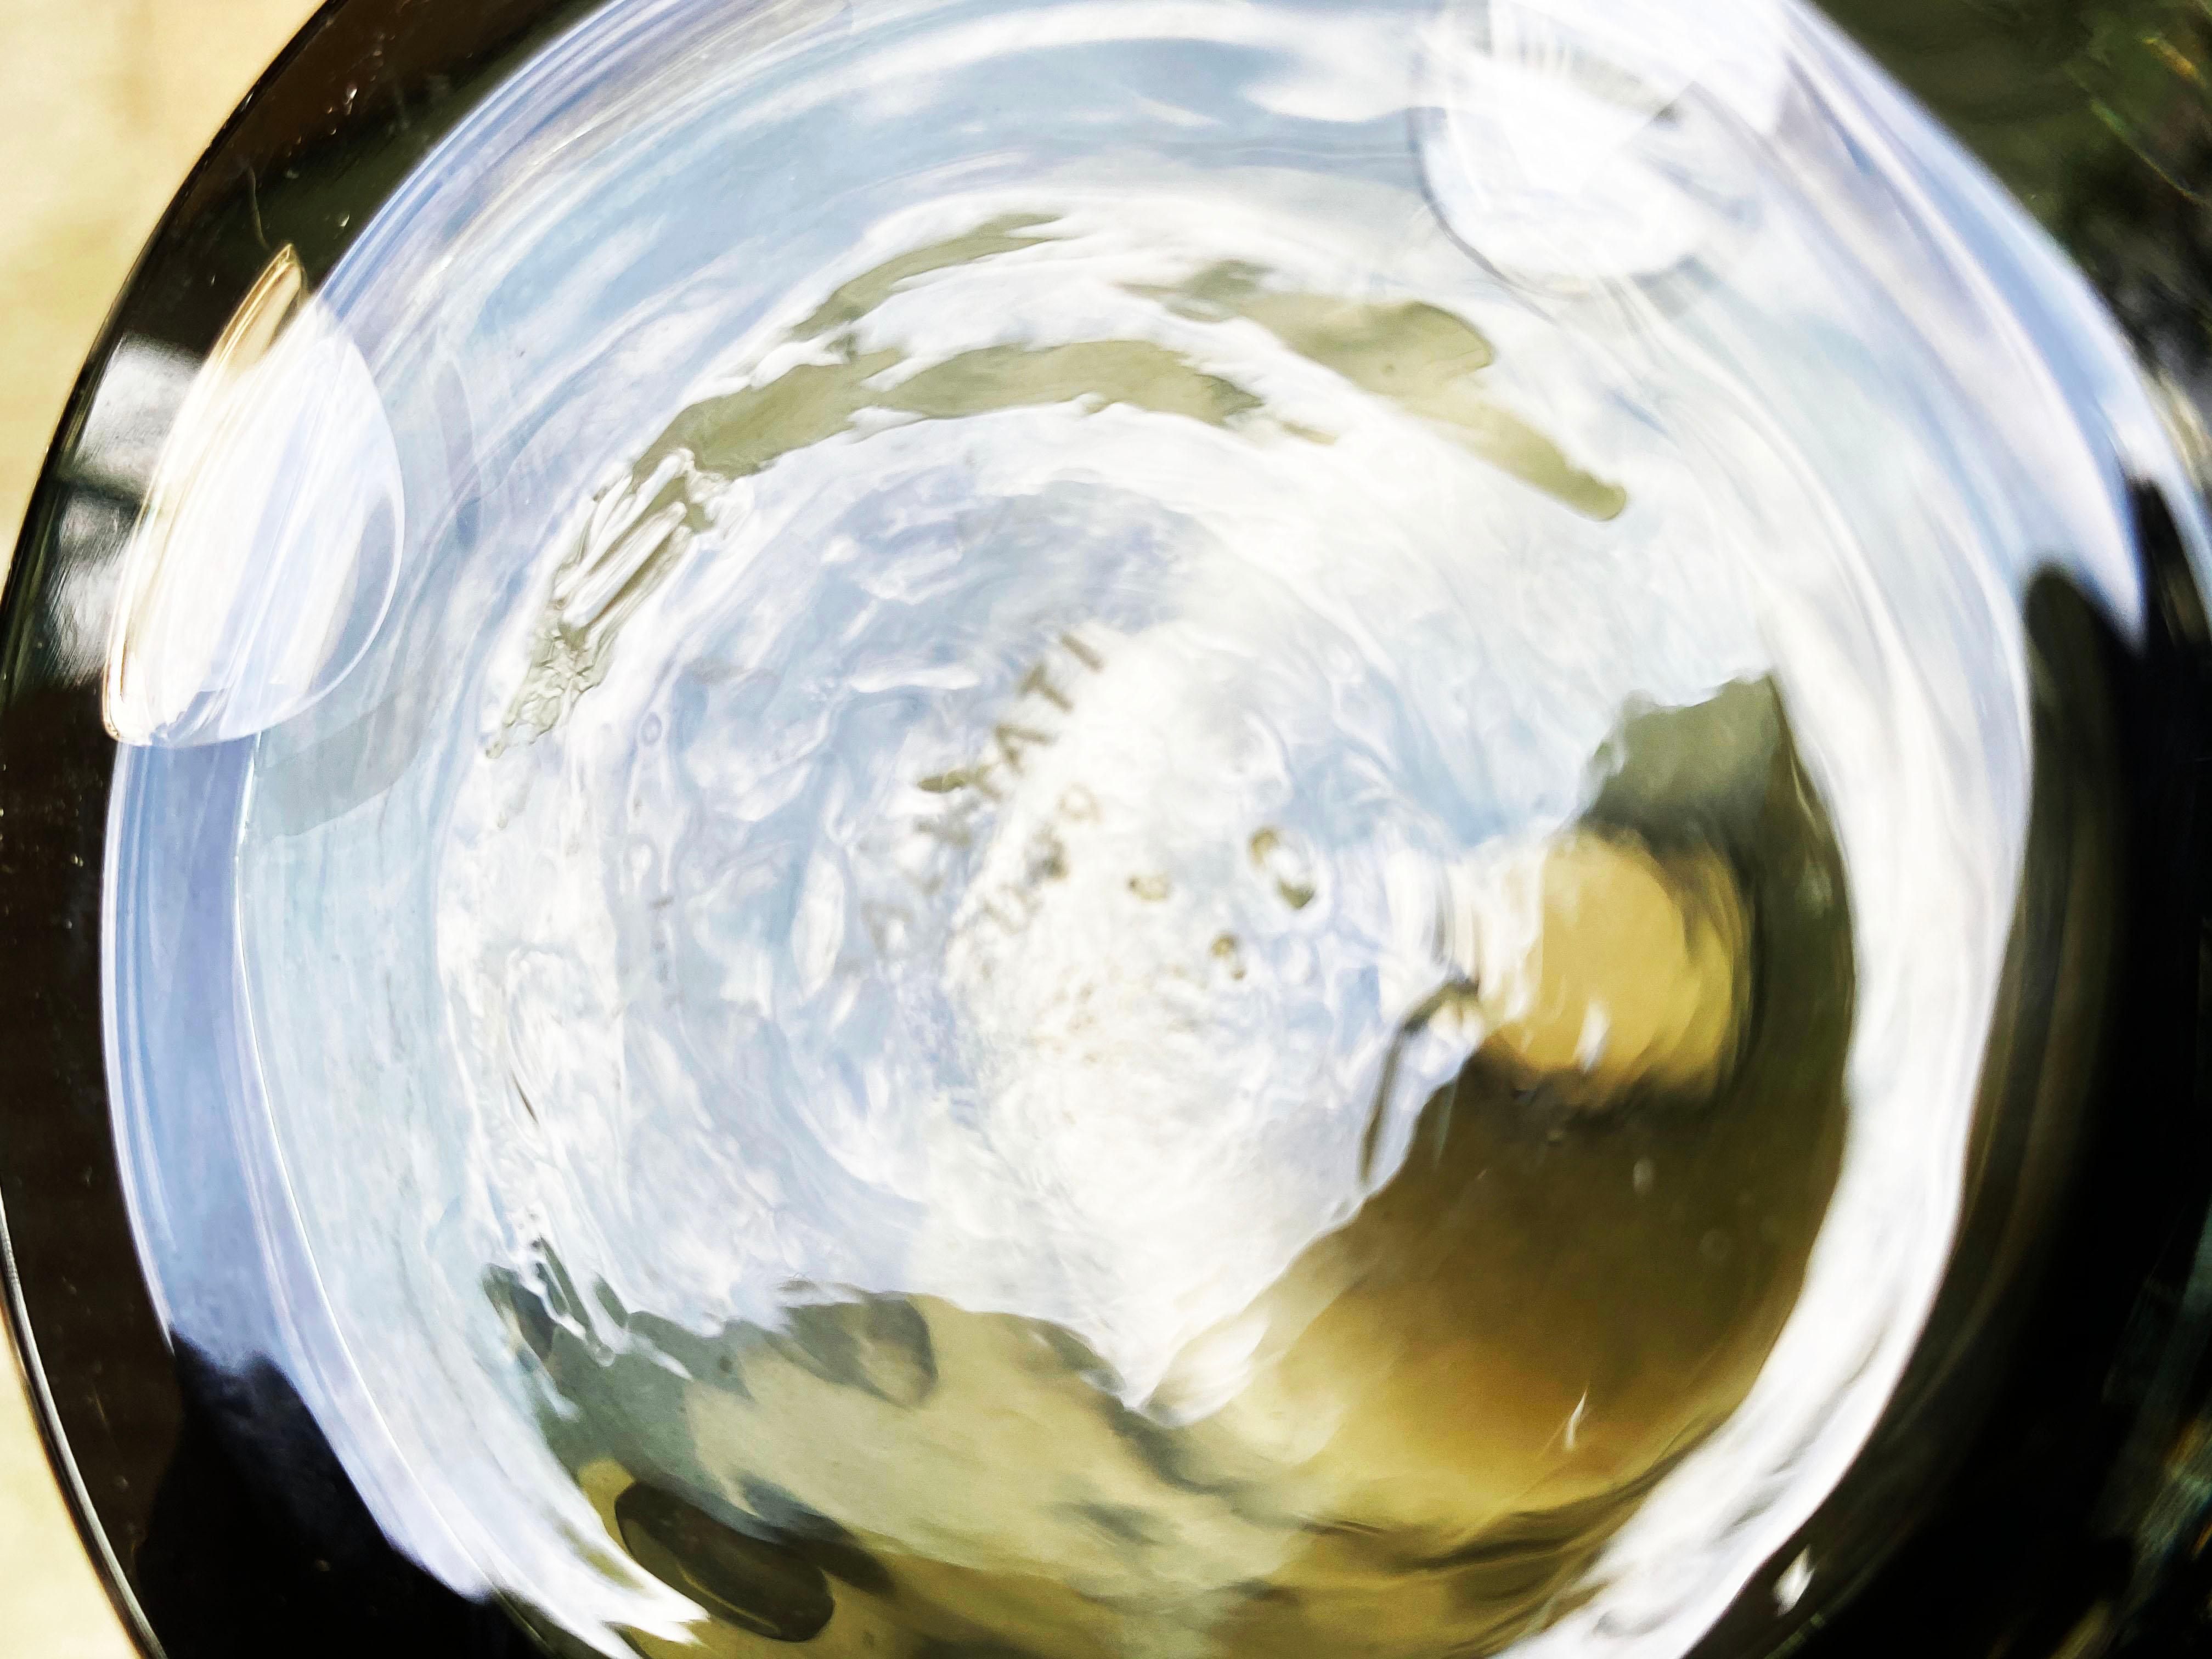 Salviati Murano
par Renzo Stellon
Modèle Millebolle
2 vases coniques décorés de grosses bulles grises
en verre Murano gris fumé
Signé et daté 2009
Mesures : 43 H x 24 D
Nouveau en stock dans leur boîte d'origine
1650 euros par